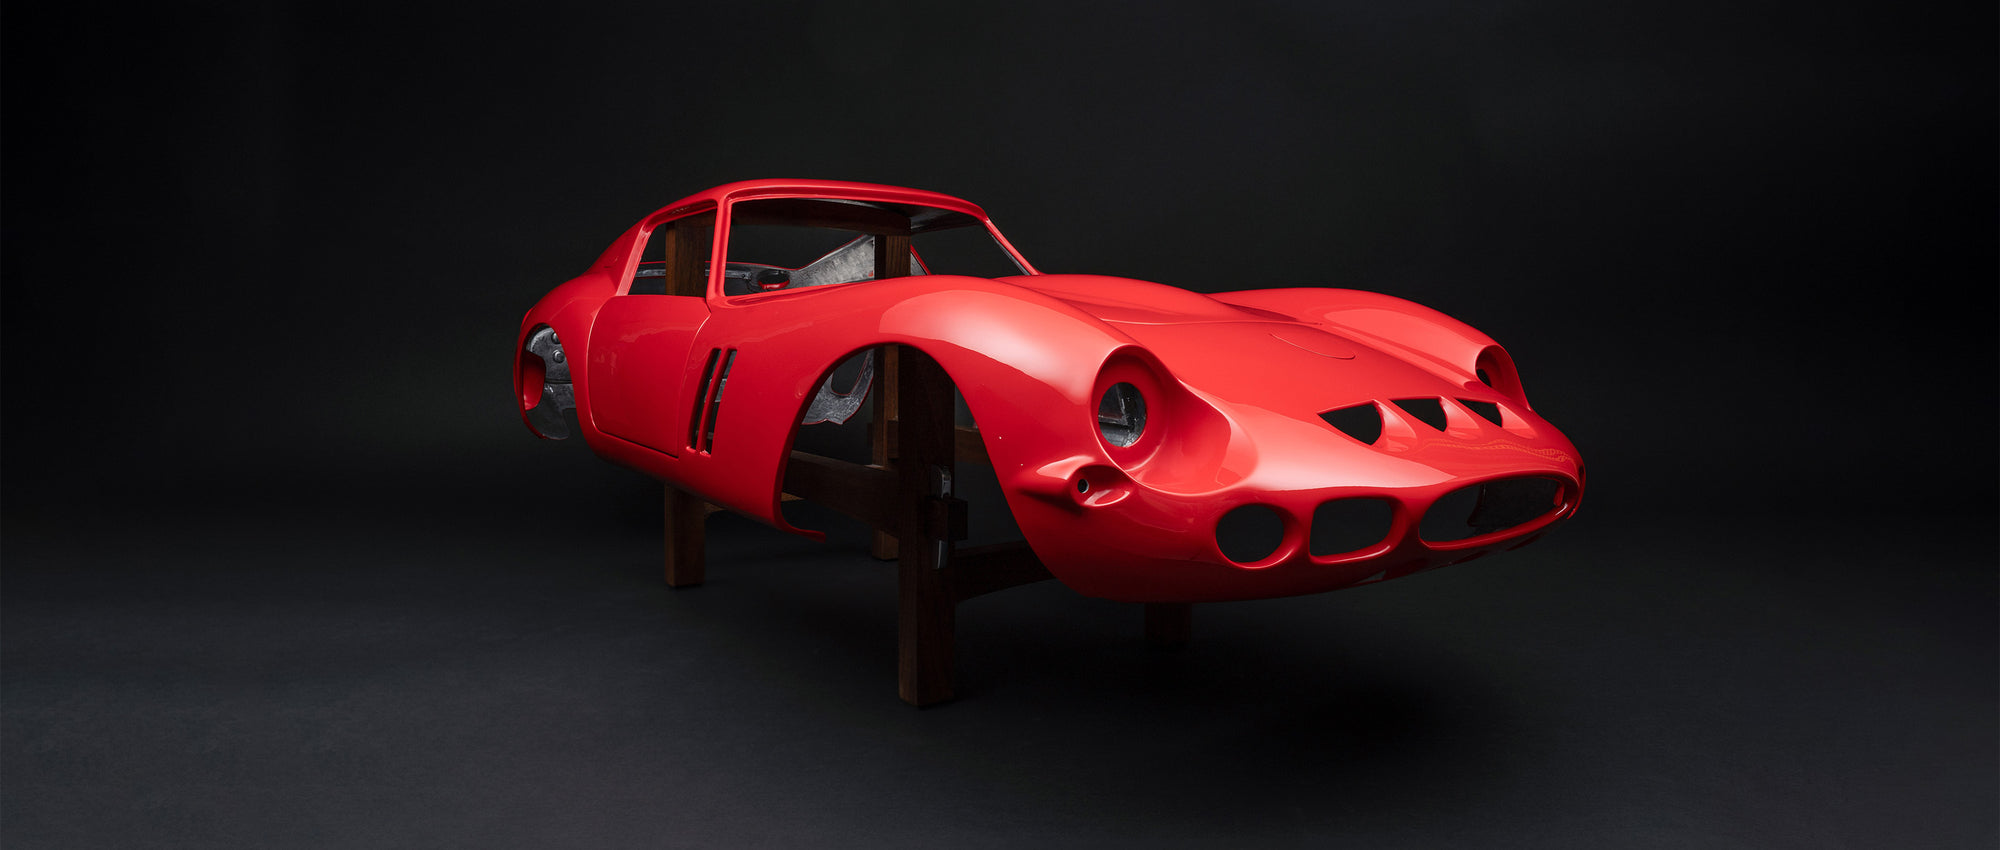 Ferrari 250 GTO - Painted Aluminium Body Replica